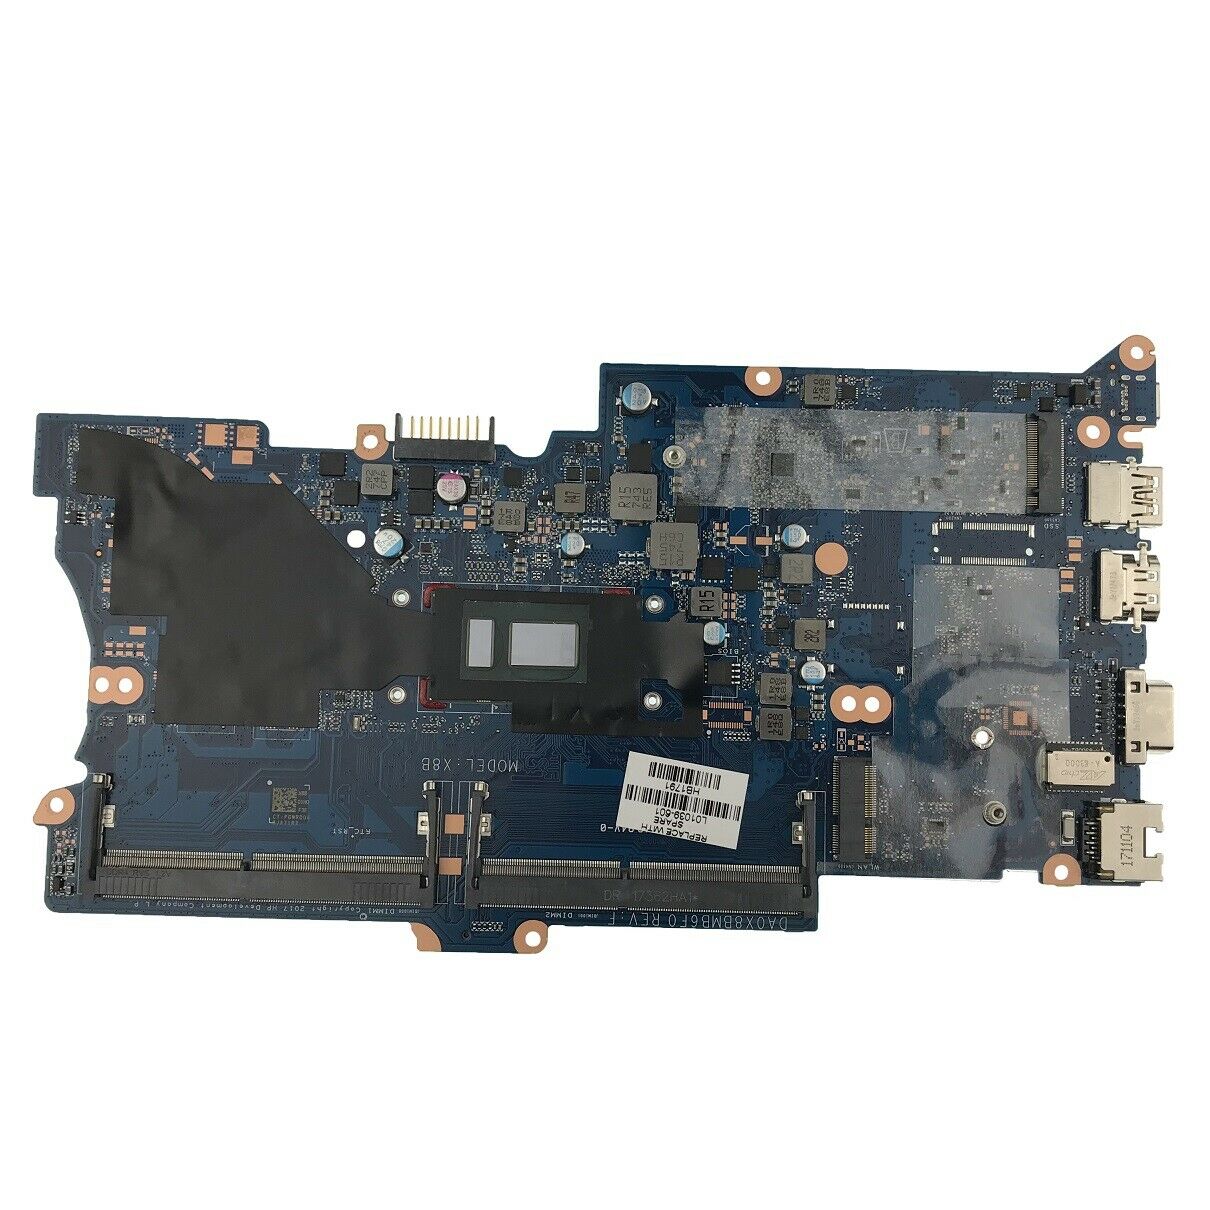 Placa base L01039-601 I5-8250U (placa del sistema) para HP ProBook 430 G5 440450 G5